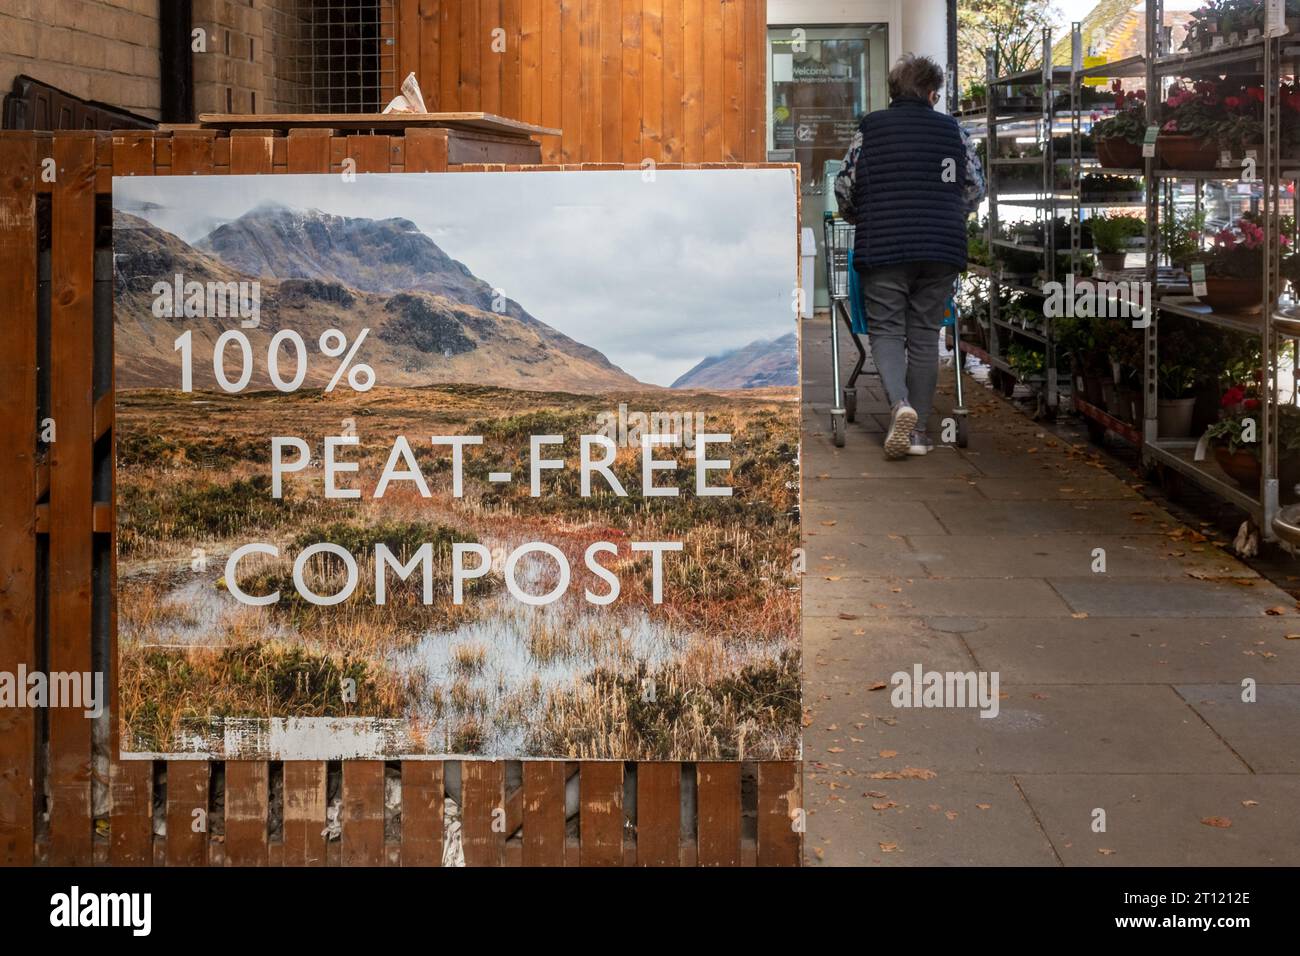 Cartello compost 100% privo di torba all'esterno del supermercato Waitrose con vendita di piante all'esterno, Inghilterra, Regno Unito Foto Stock